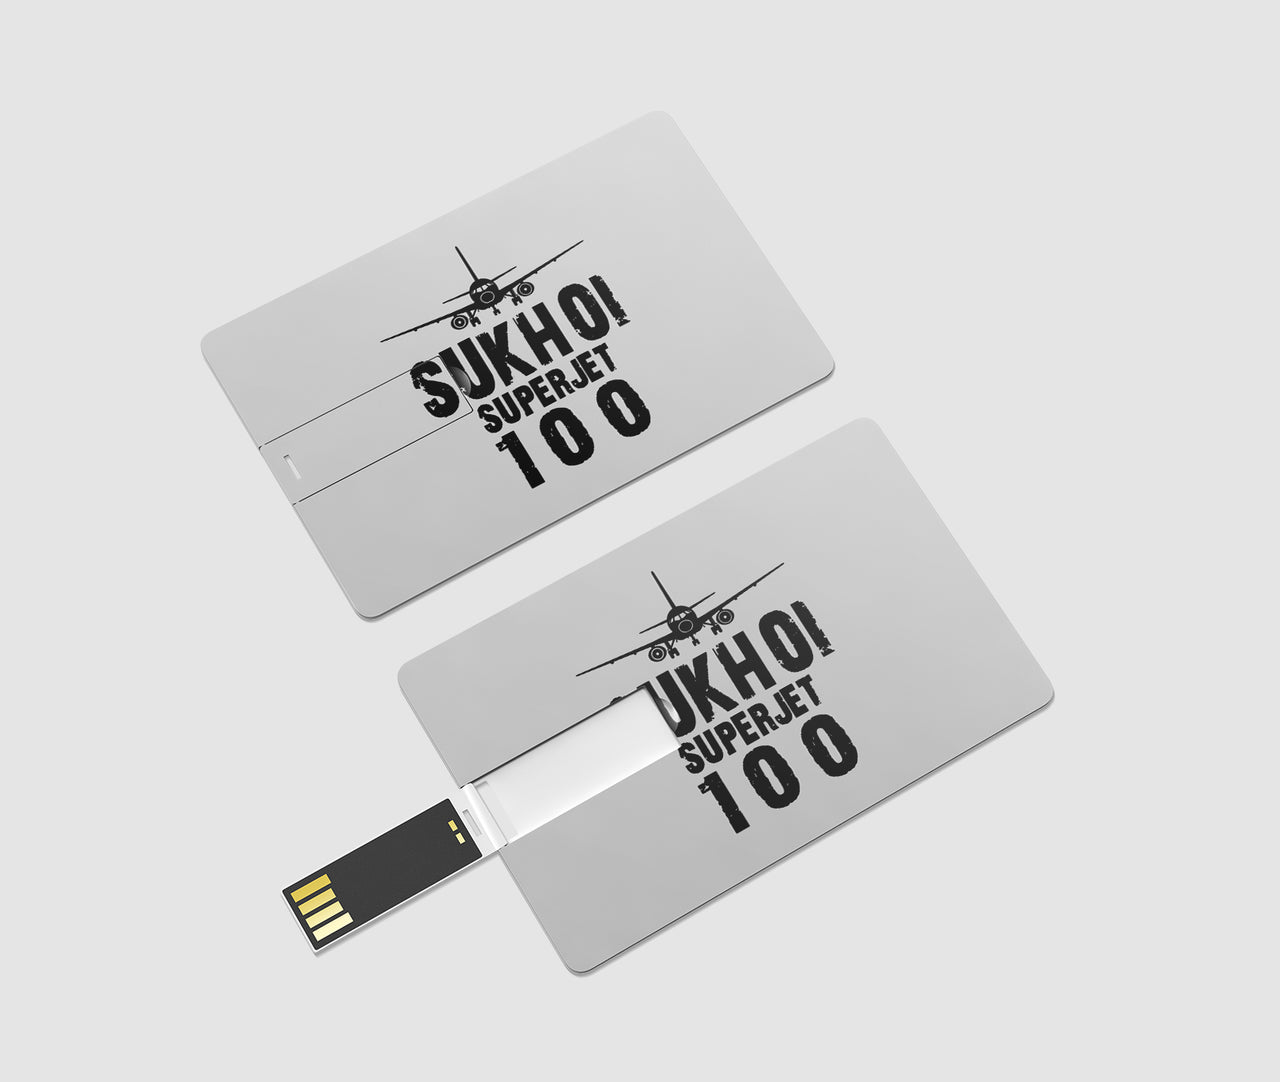 Sukhoi Superjet 100 & Plane Designed USB Cards